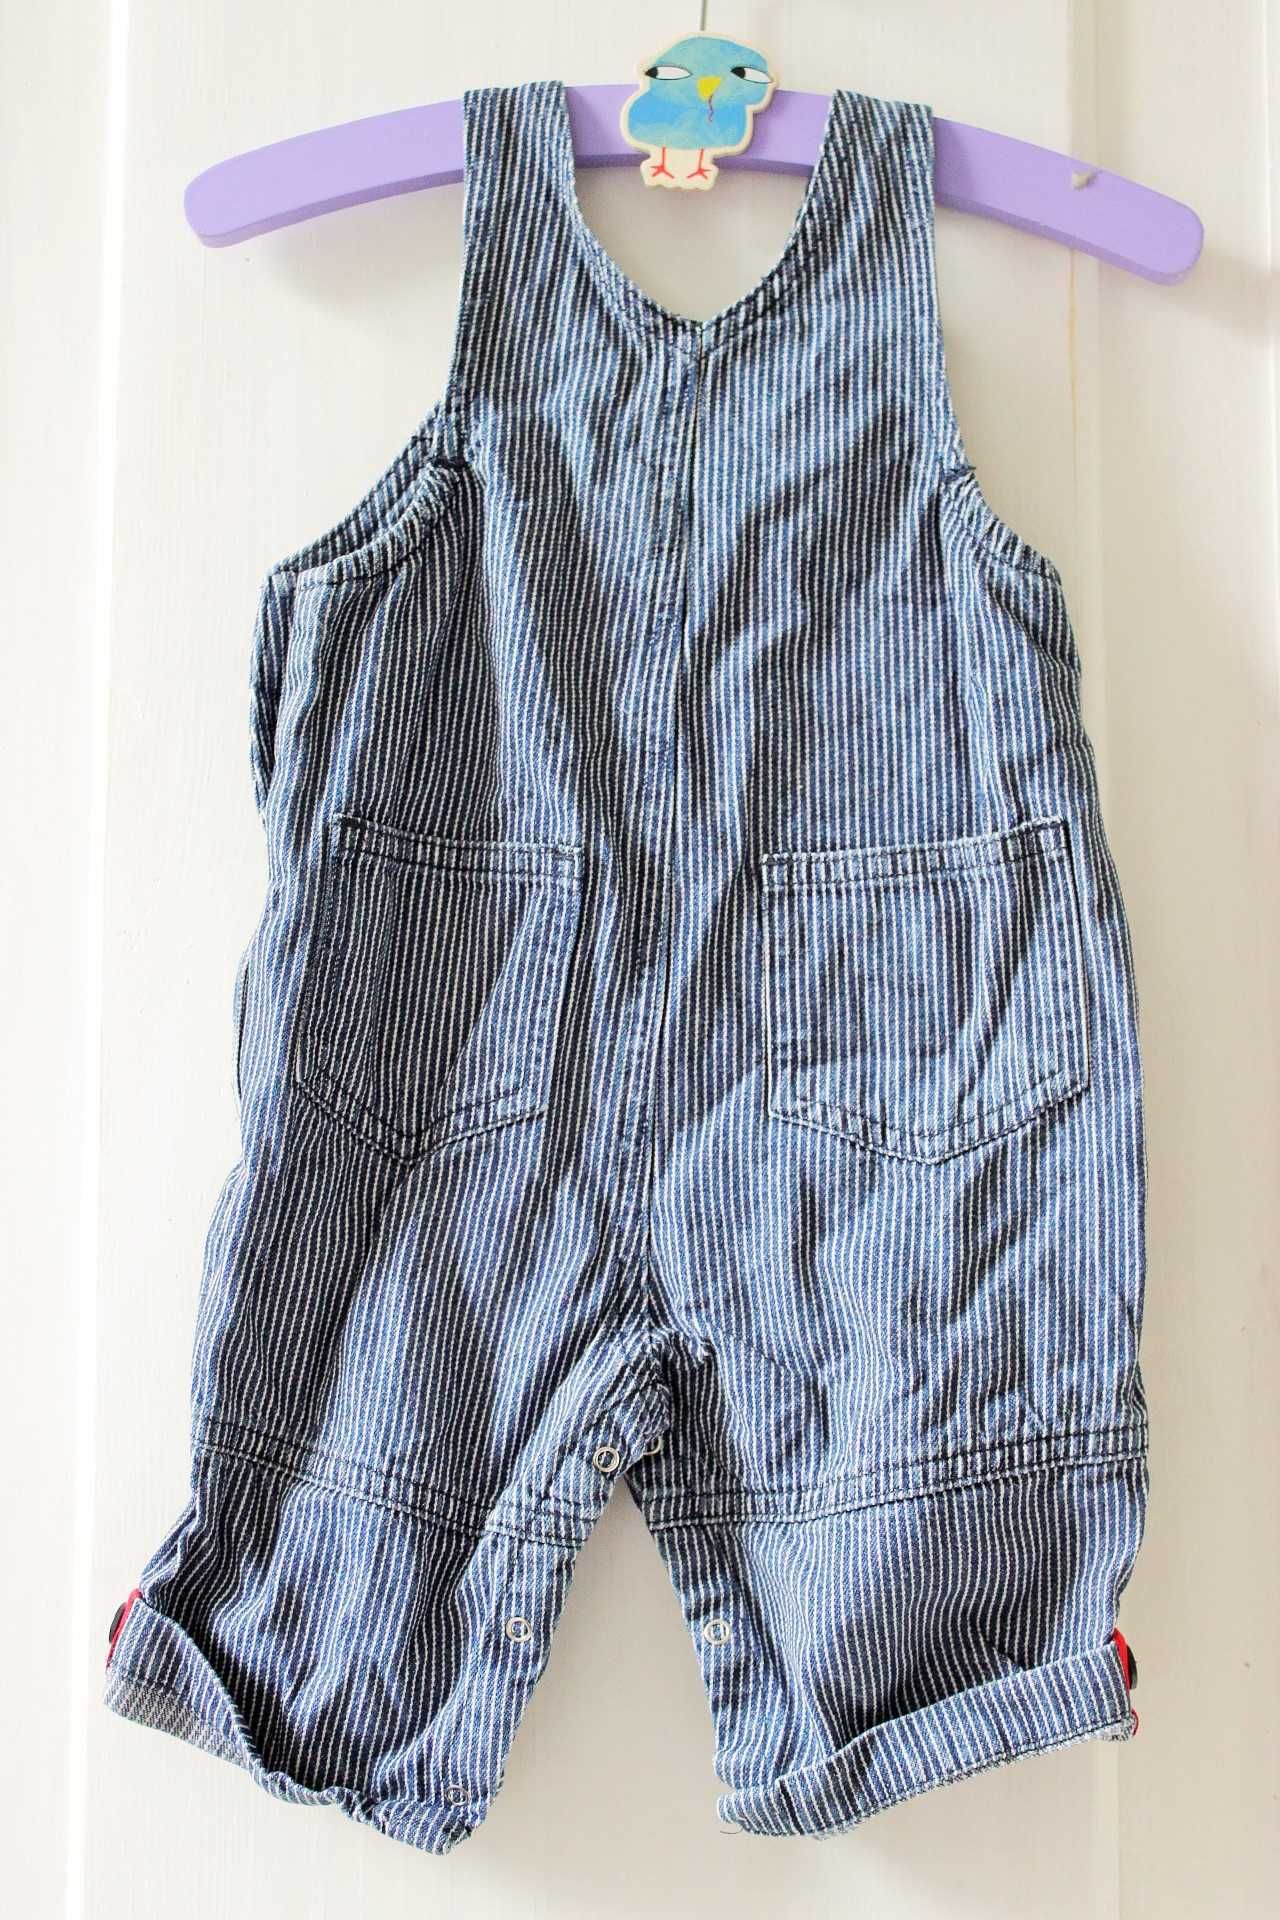 Spodnie, ogrodniczki jeans, spodenki, paski, spodnie, rozm.68, zara